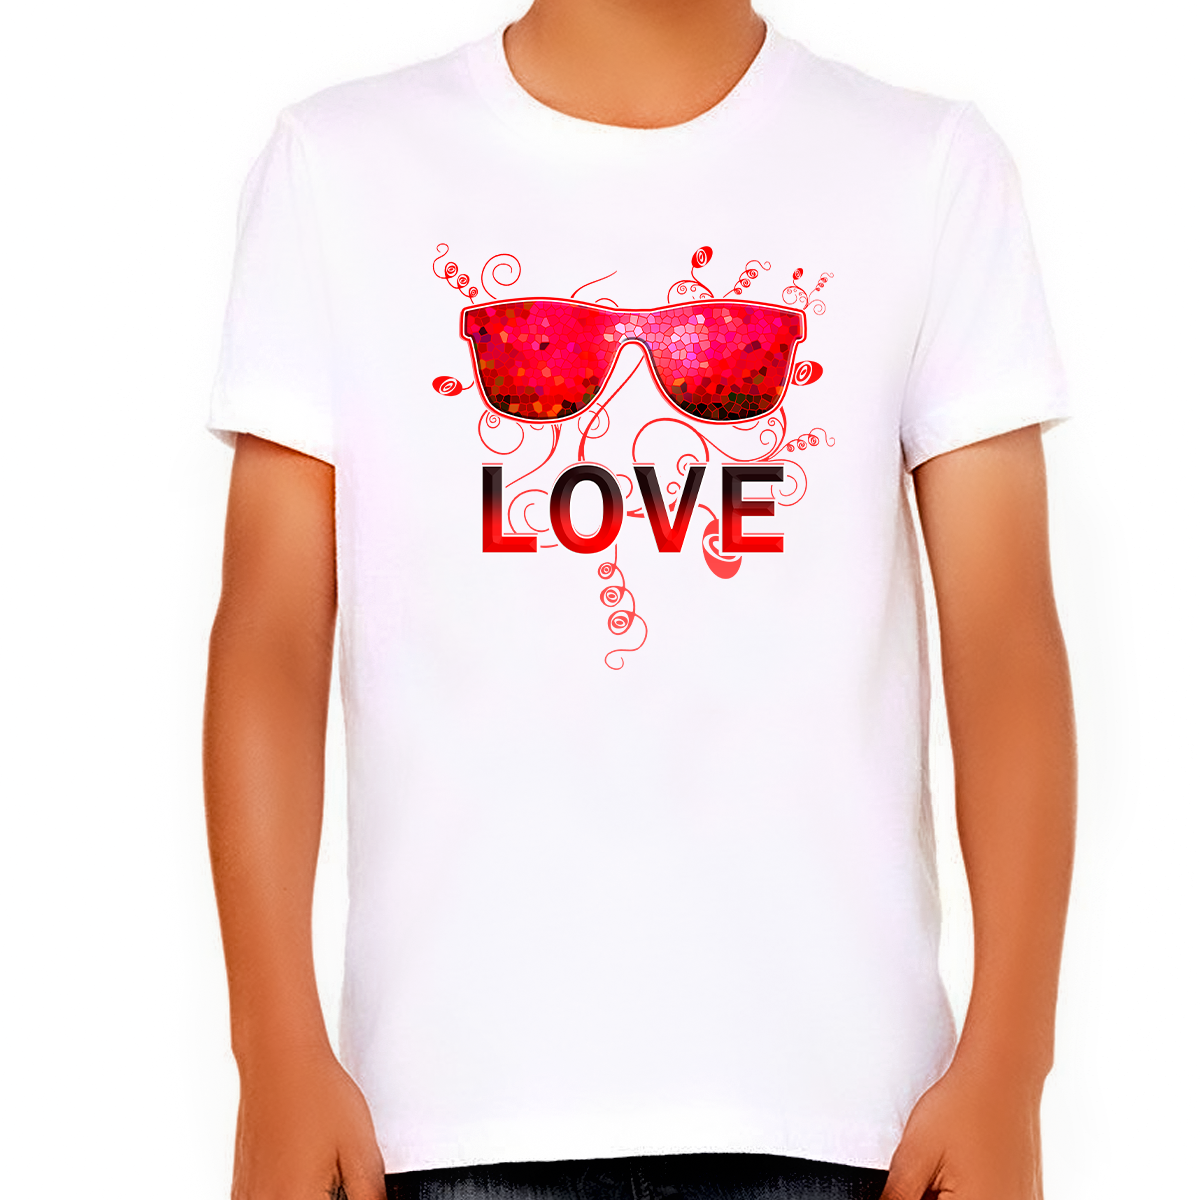 Boys Valentines Day Shirt - Valentines Day Shirts for Boys - Valentine Shirts for Kids